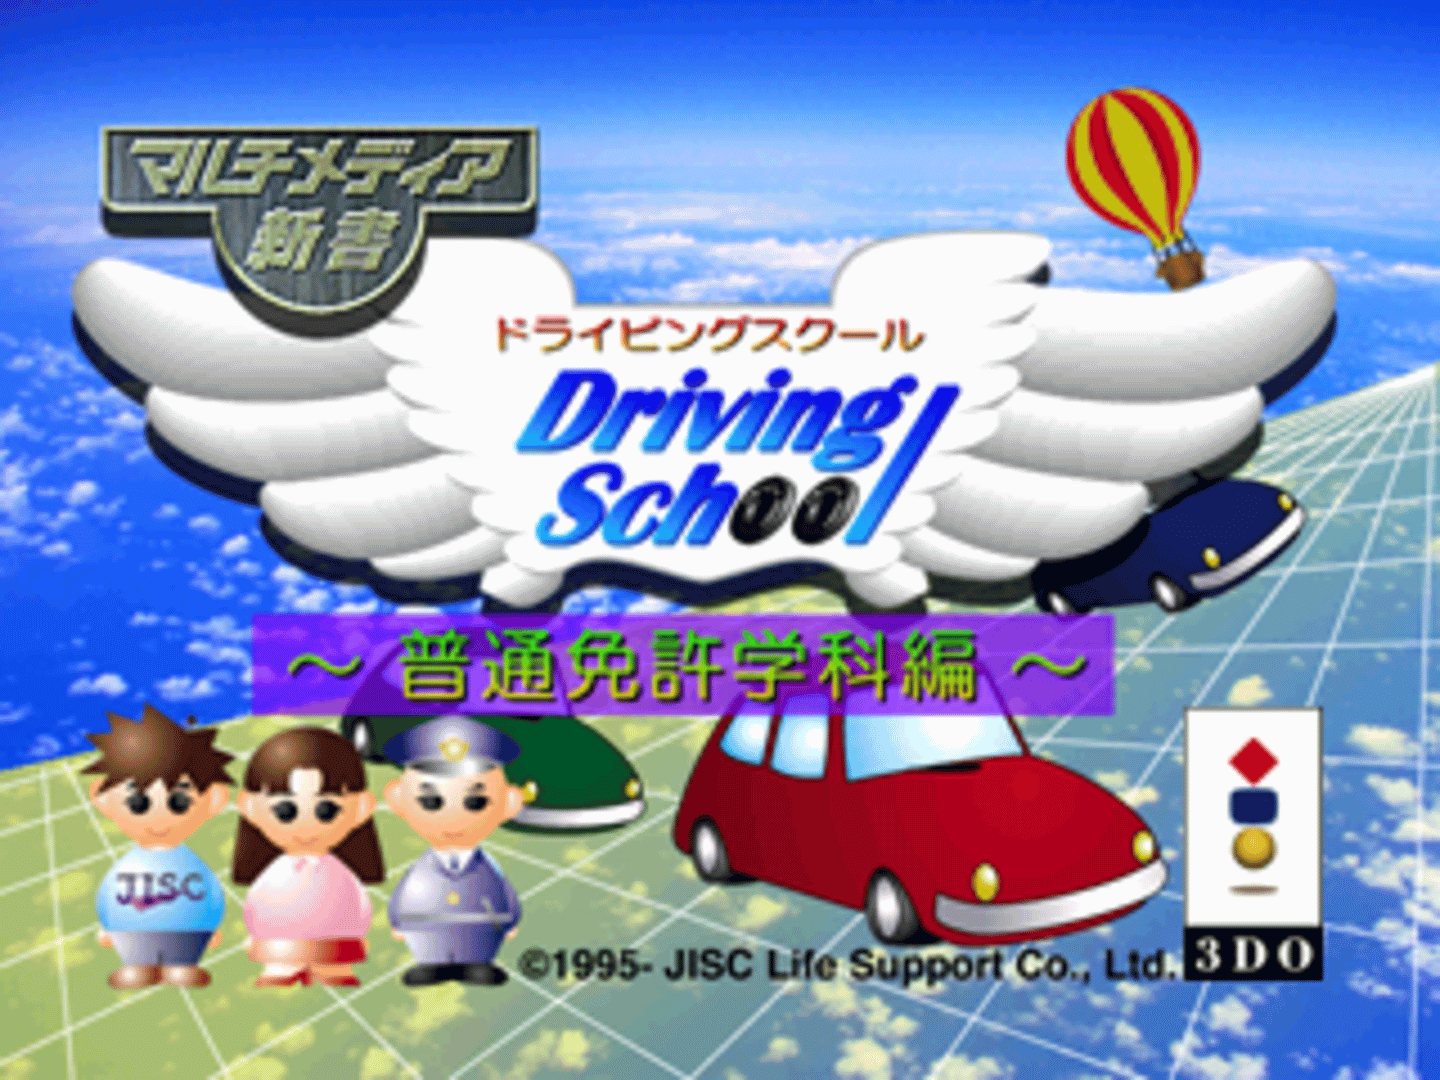 Multimedia Shinsho: Driving School - Futsu Menkyoka Hen screenshot